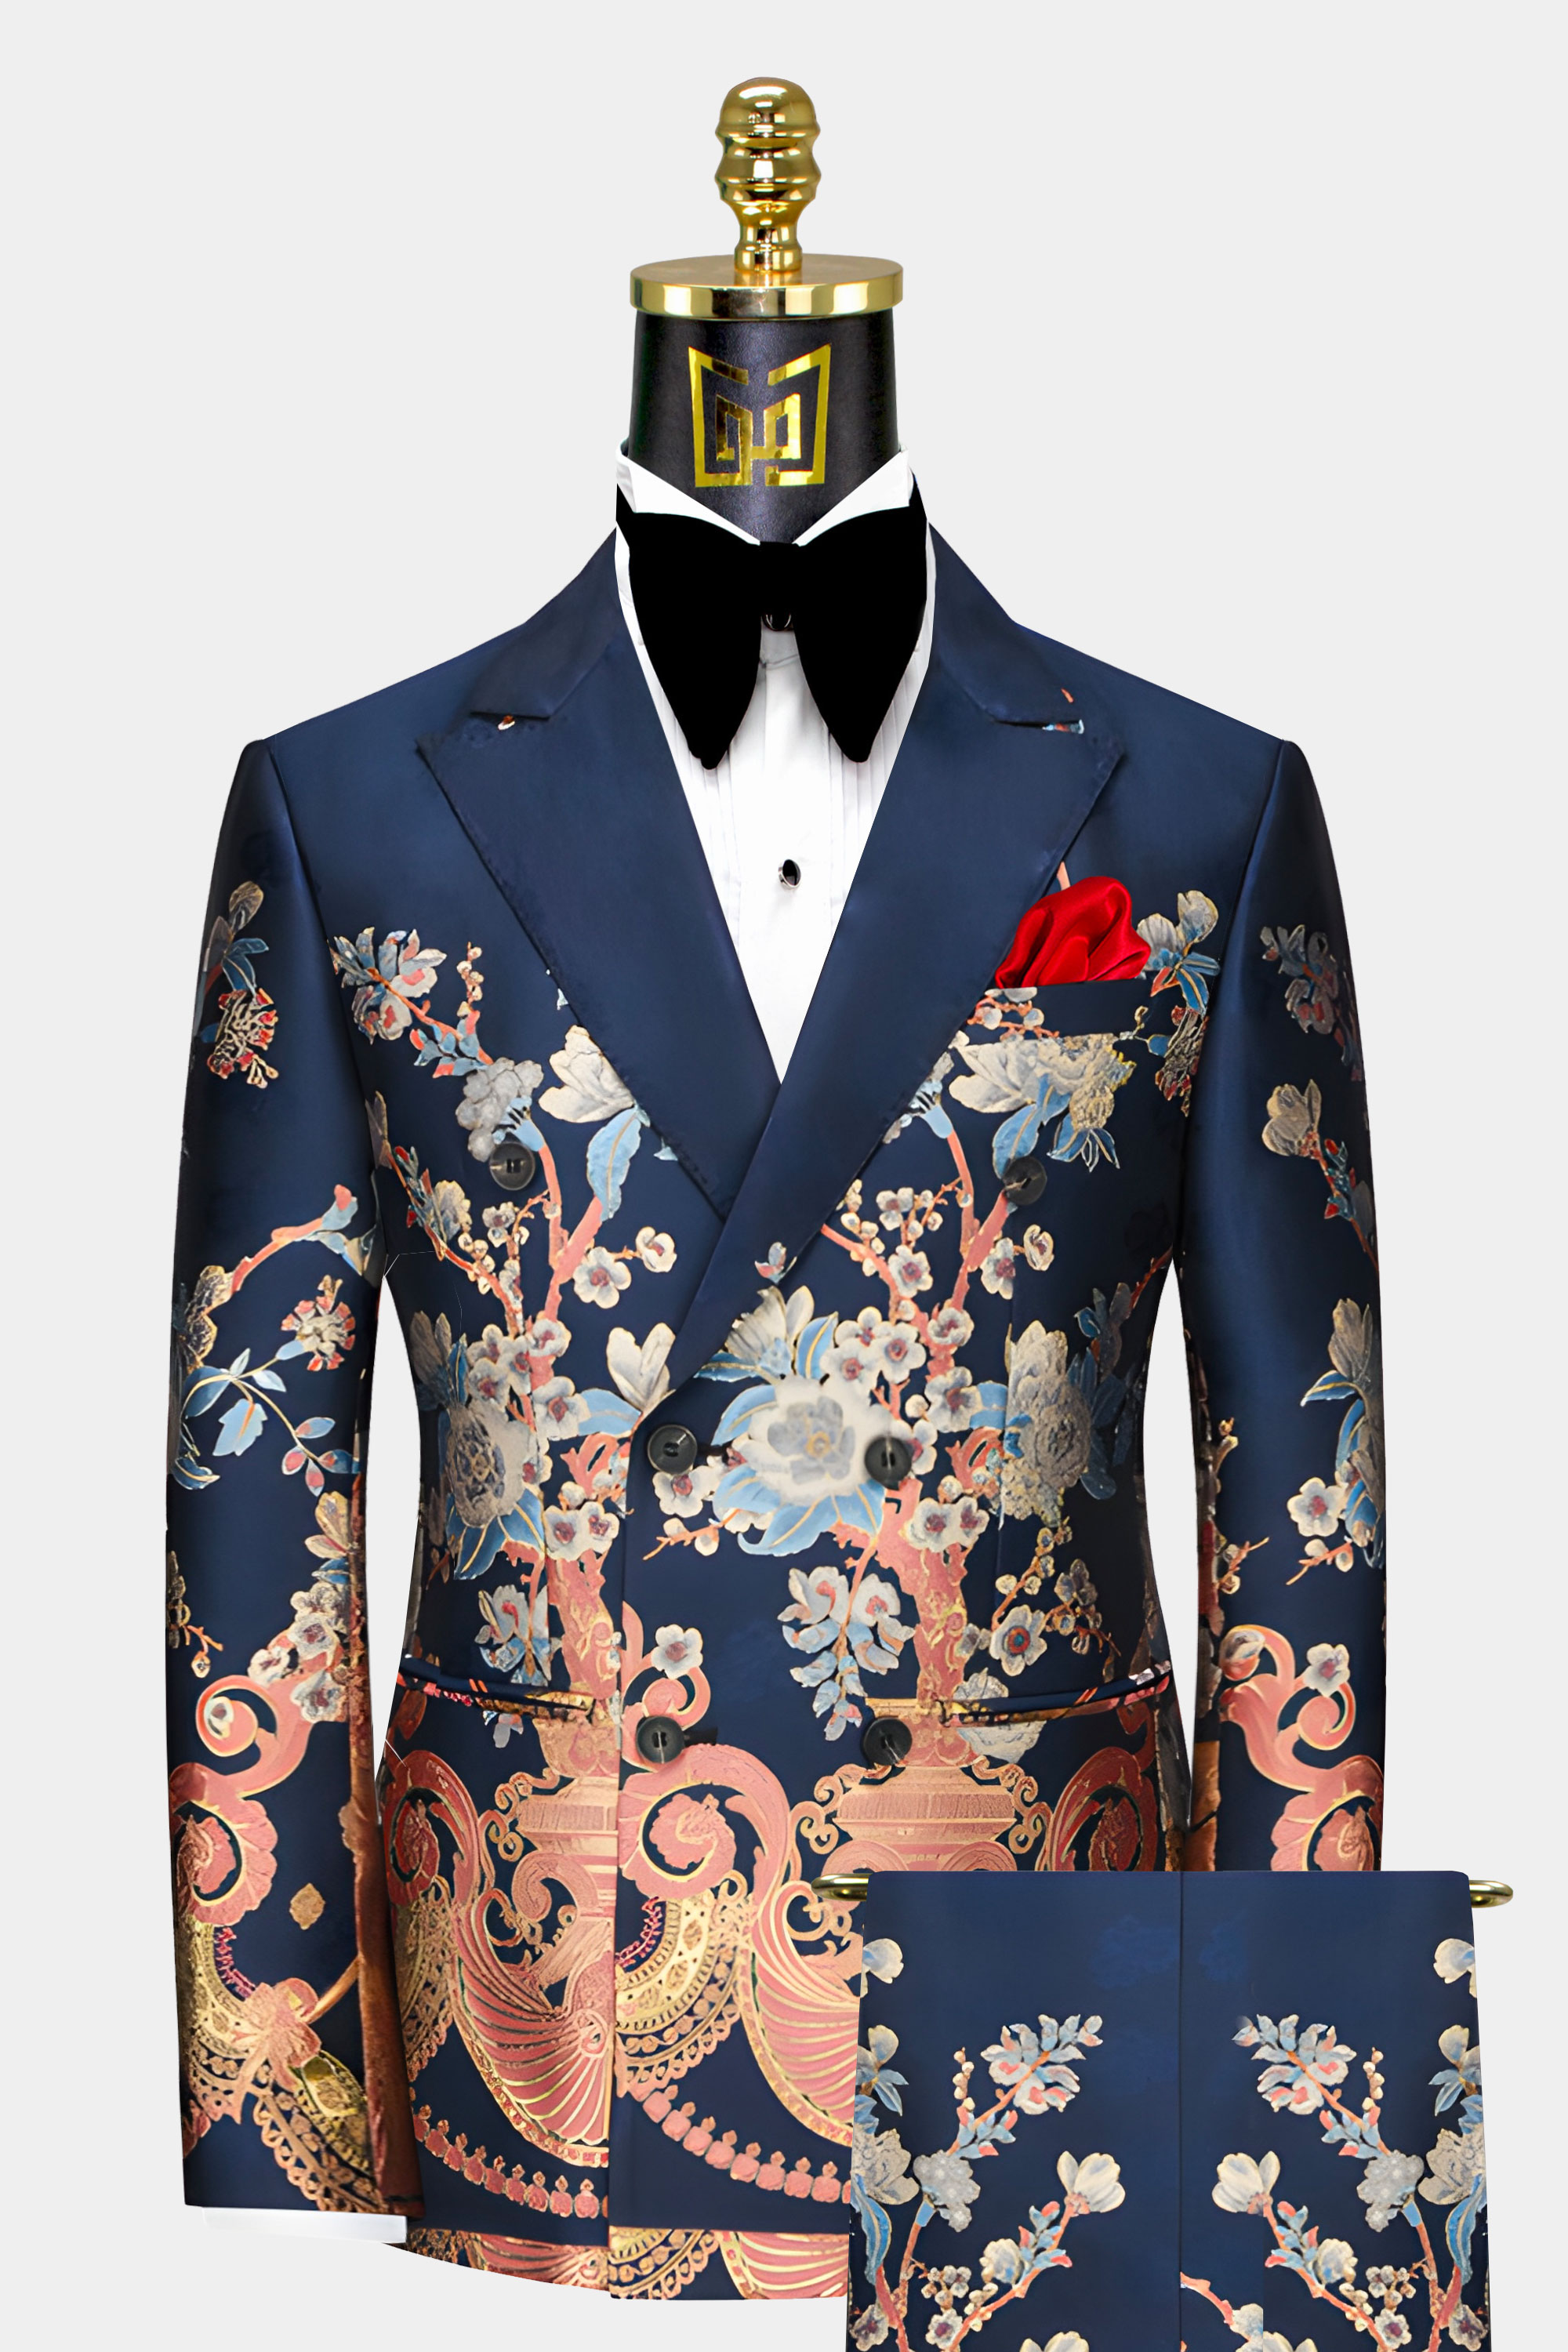 Mens-Navy-Blue-Floral-Suit-Groom-Wedding-Prom-Tuxedo-from-Gentlemansguru.com